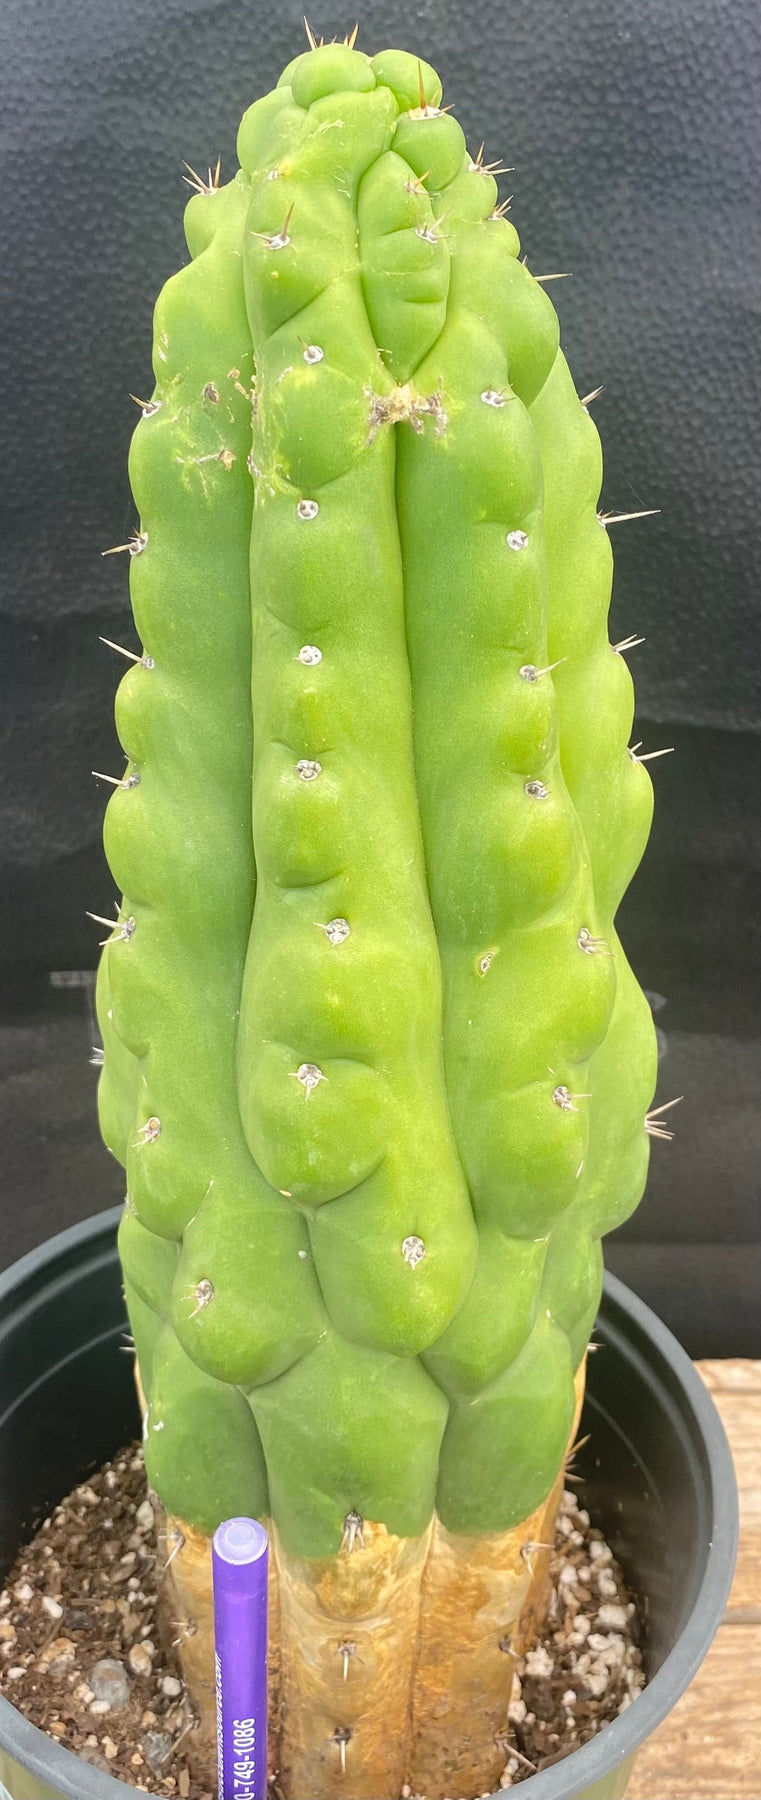 #EC126 EXACT Trichocereus Pachanoi Monstrose BUTT Cactus 12.5”